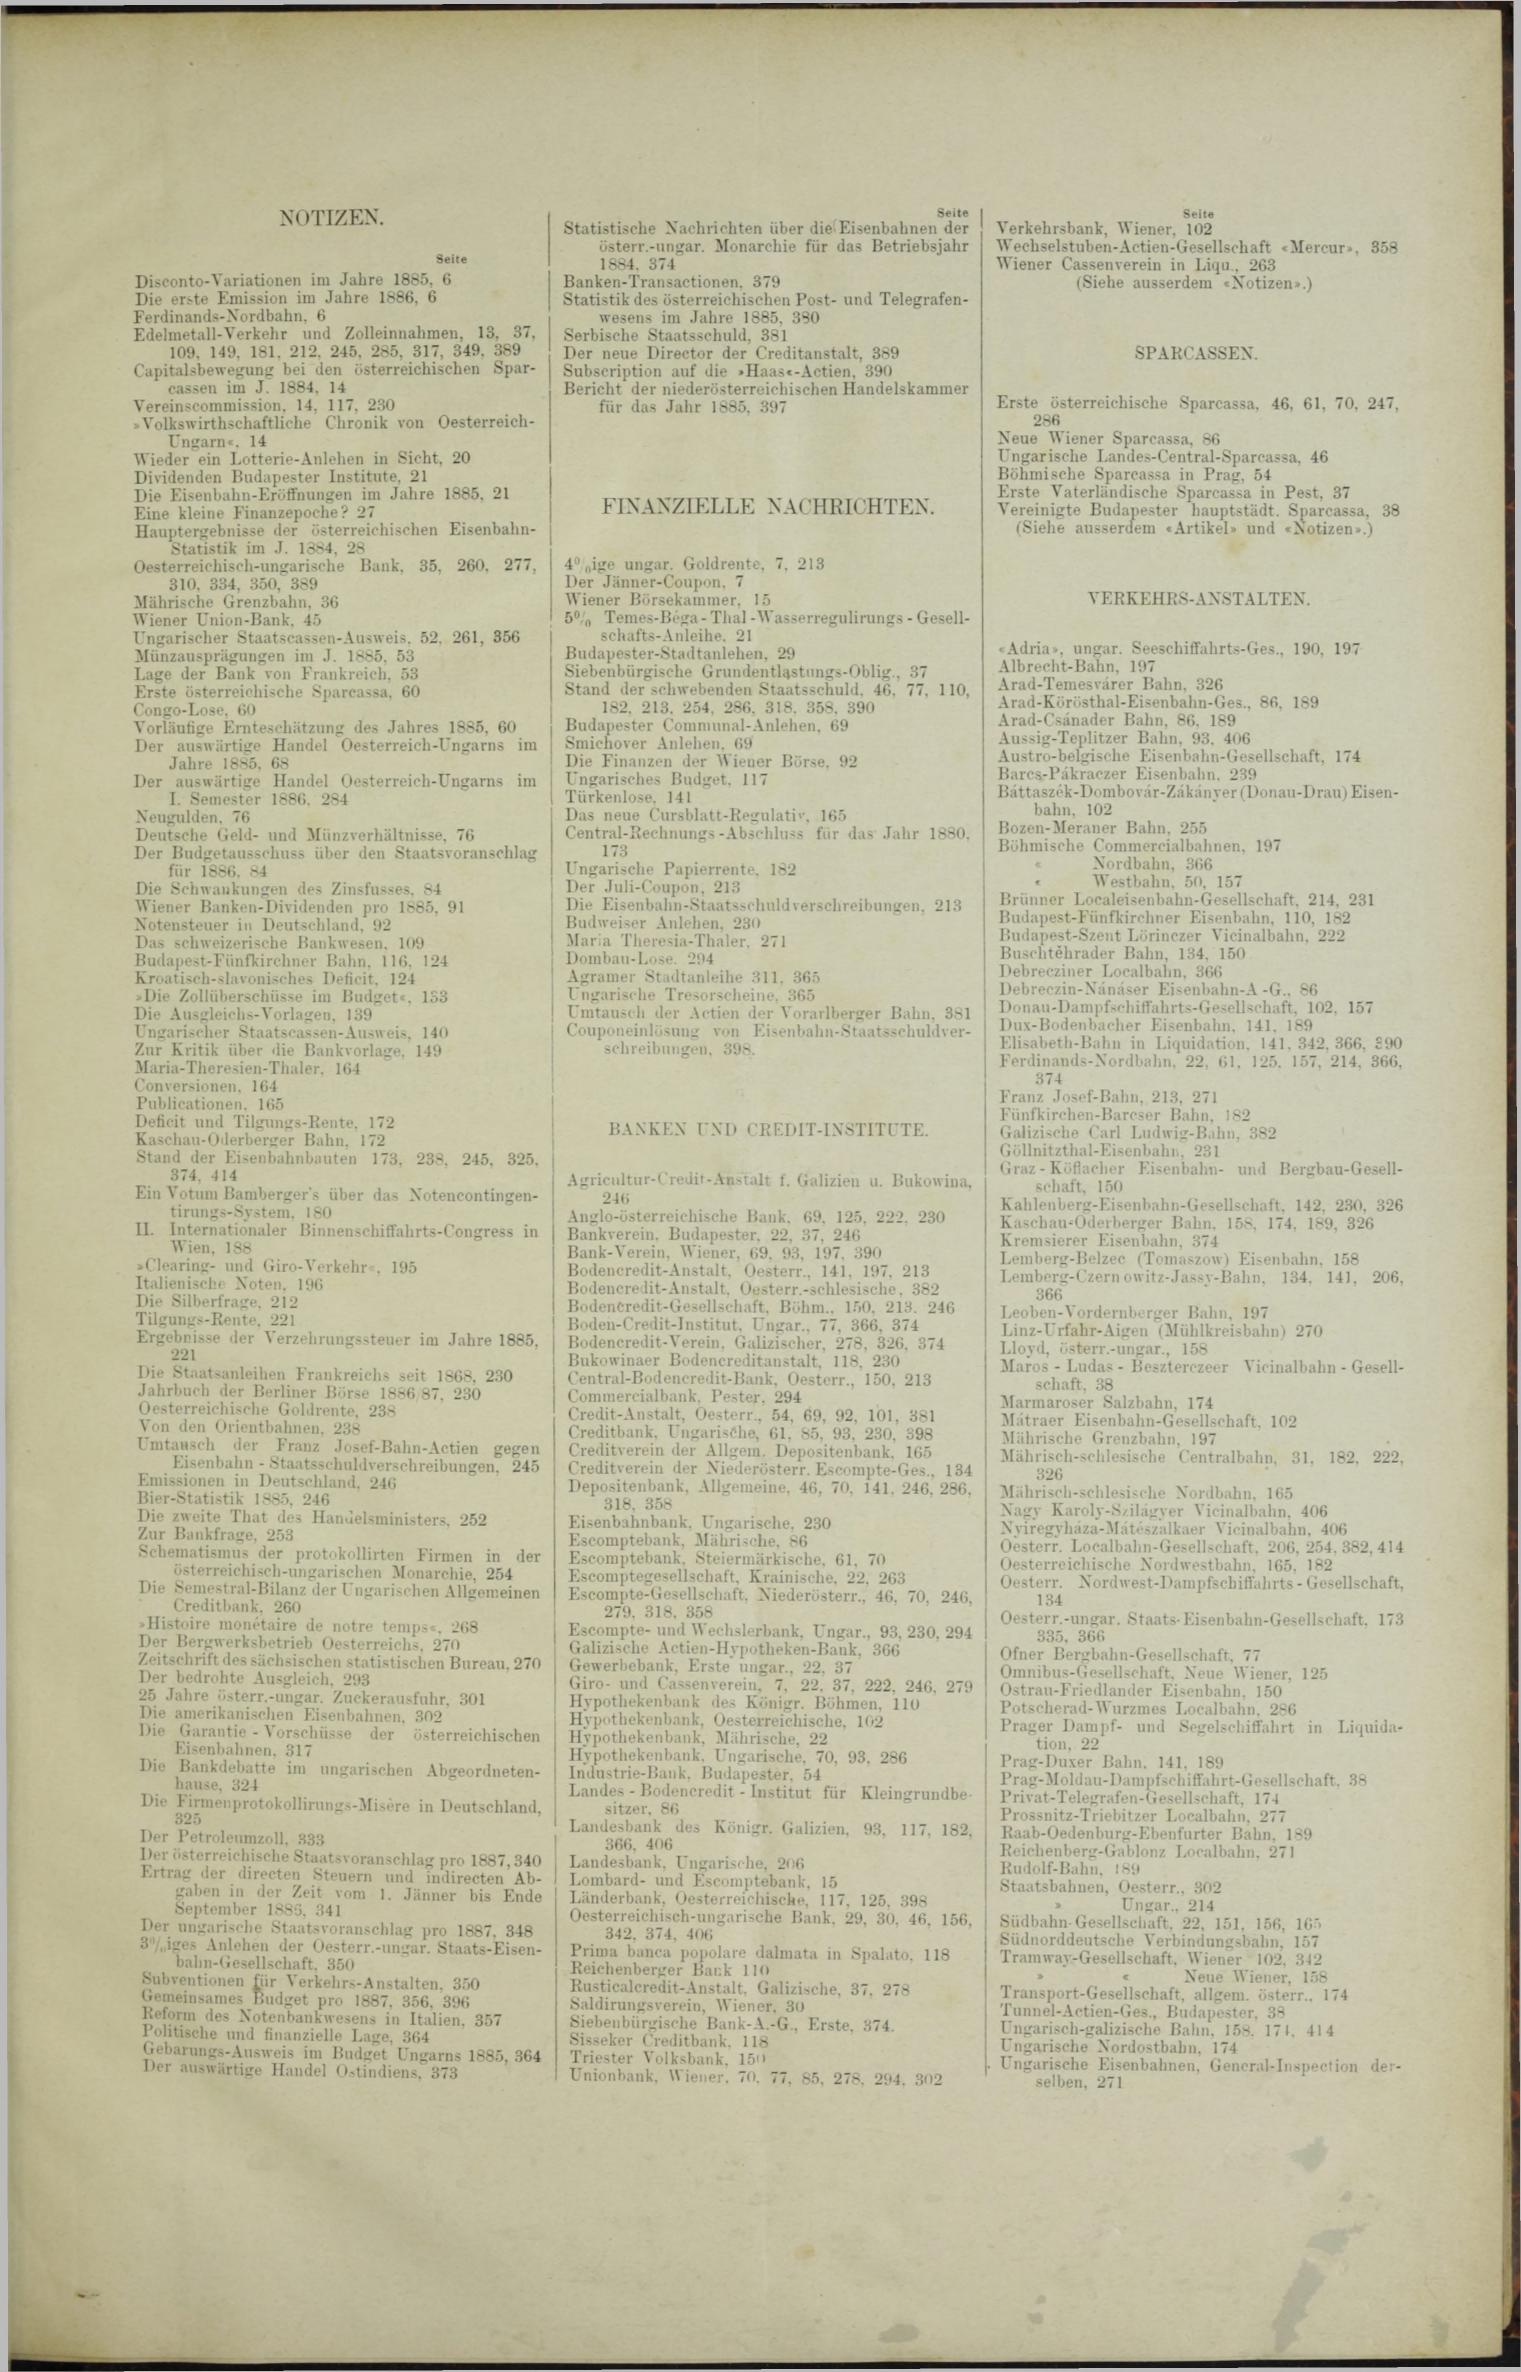 Der Tresor 07.01.1886 - Seite 11